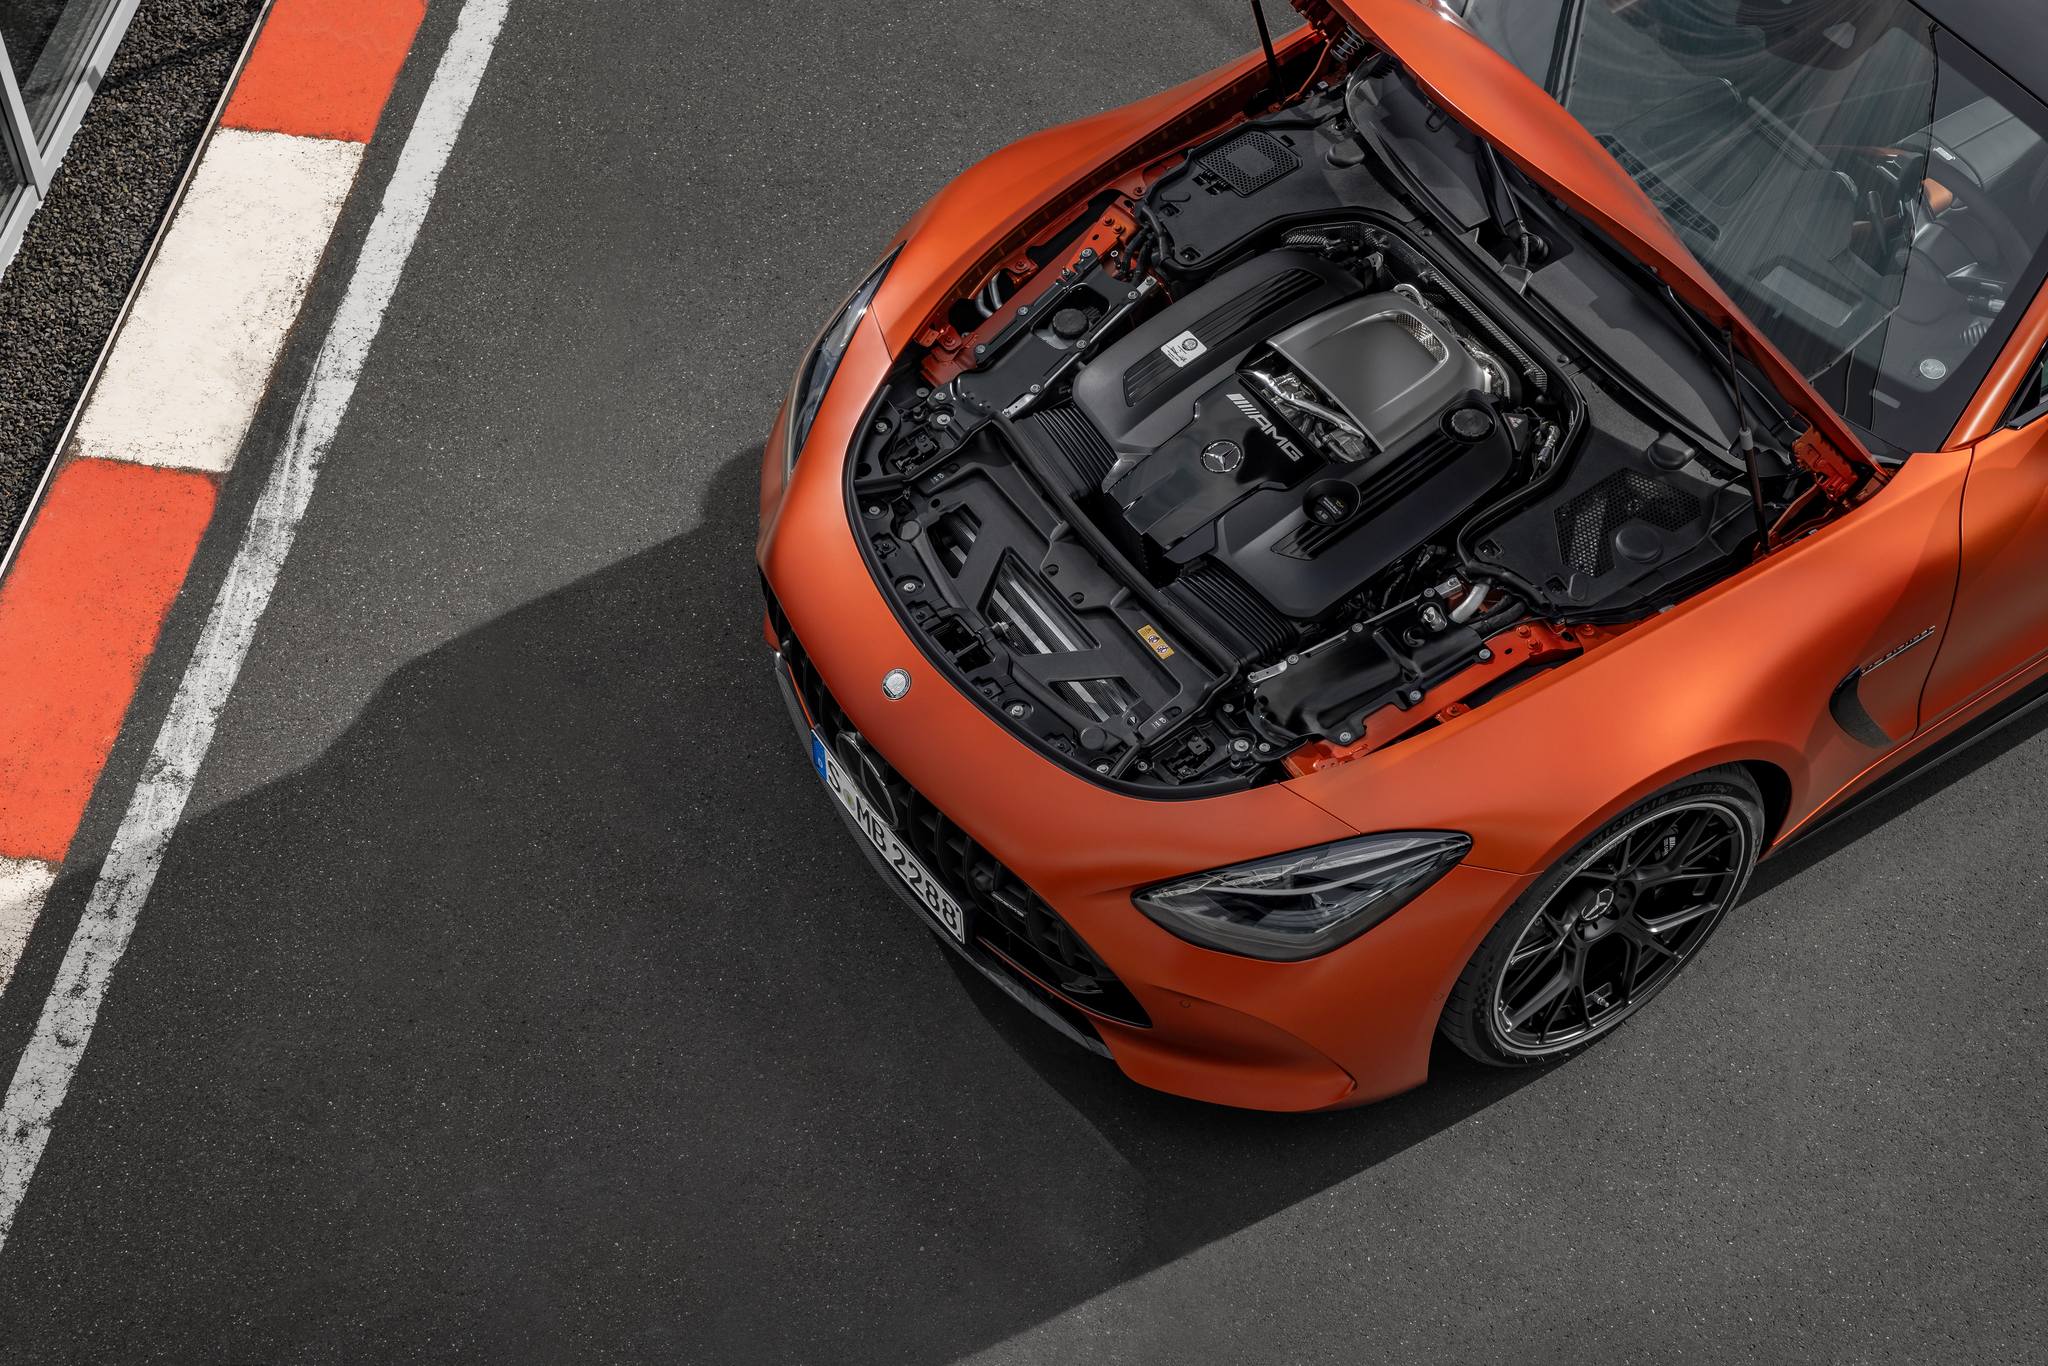 Mercedes-AMG GT 63 S E Performance mở cọc tại đại lý: Mạnh tới hơn 800 mã lực, dự kiến từ 11 tỷ đồng, sau 6 tháng mới được nhận xe- Ảnh 4.